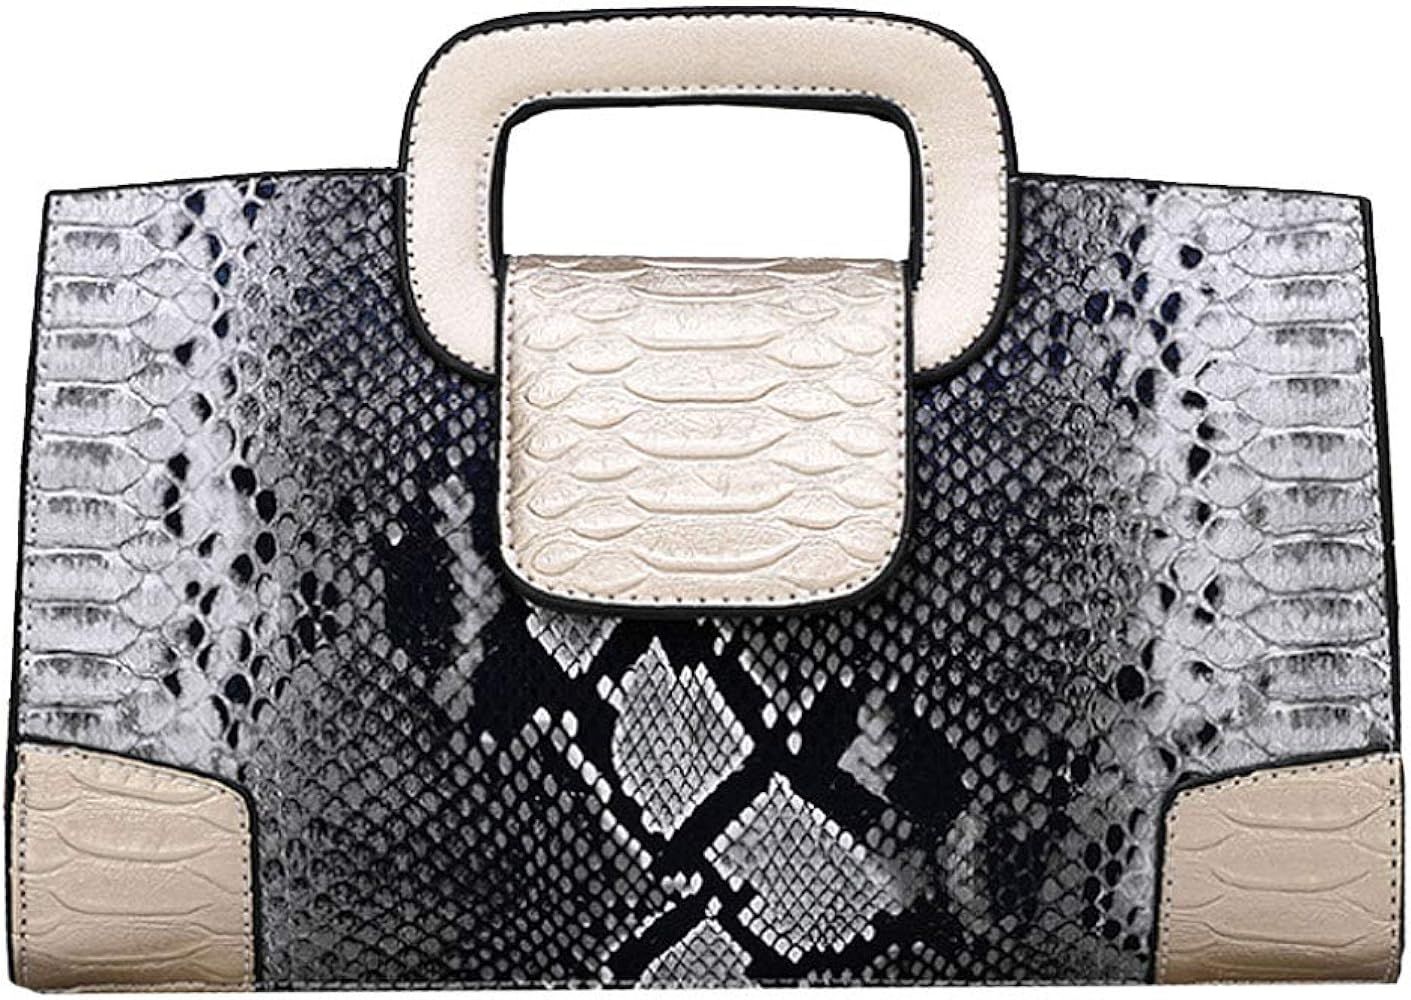 ZLMBAGUS Women Vintage Flap Tote Top Handle Satchel Handbags PU Leather Clutch Purse Shoulder Bag | Amazon (US)